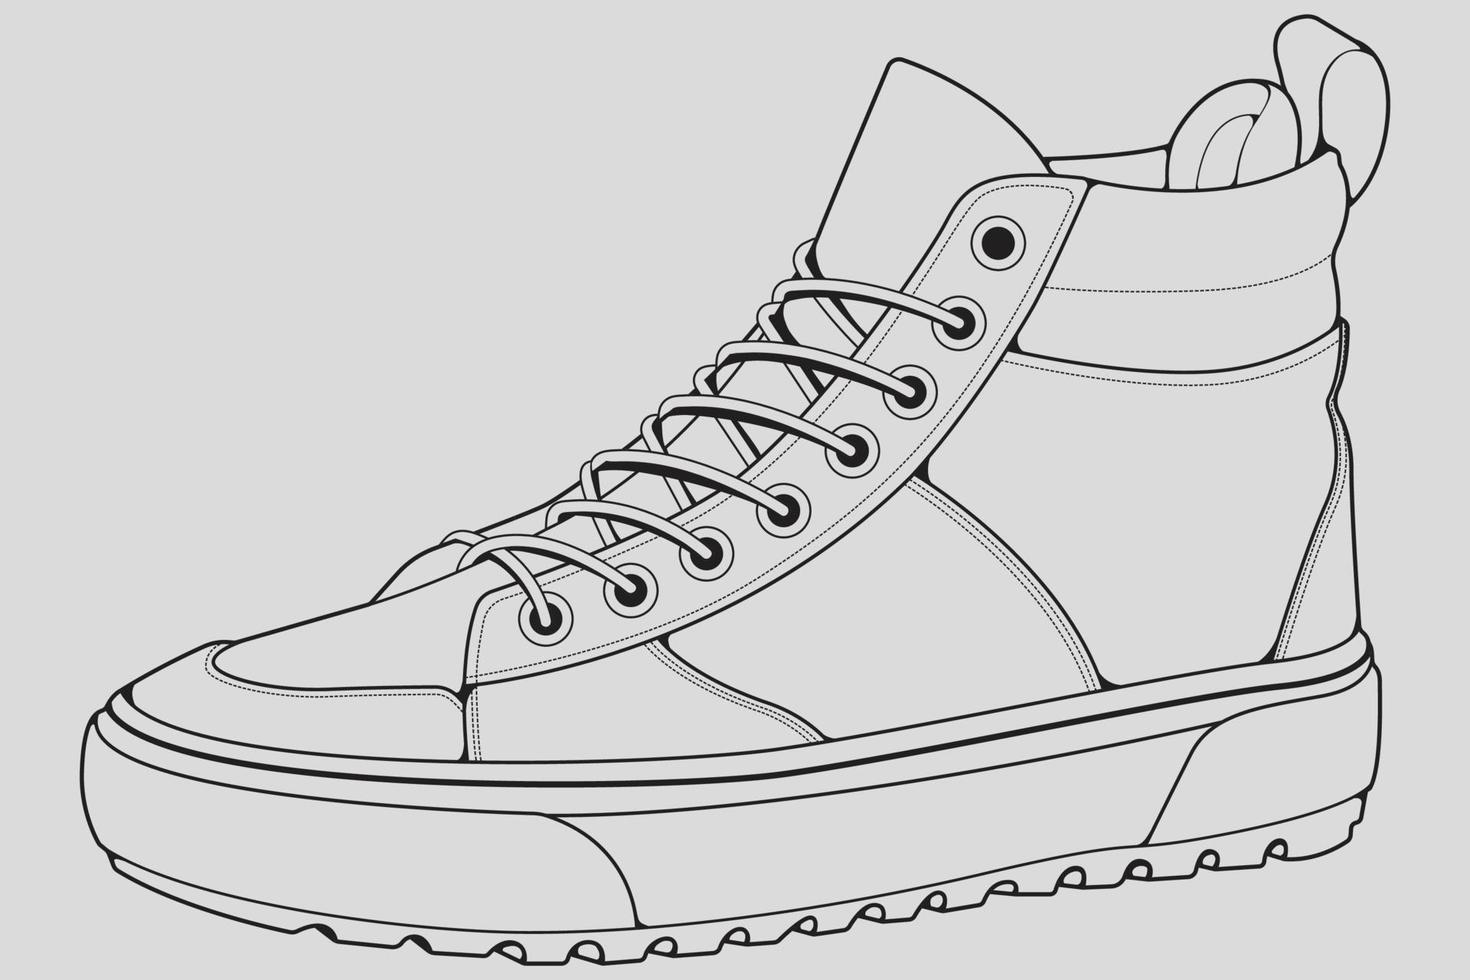 vector de dibujo de contorno de zapatillas de deporte, zapatillas dibujadas en un estilo de boceto, contorno de plantilla de zapatillas de deporte de línea negra, ilustración vectorial.